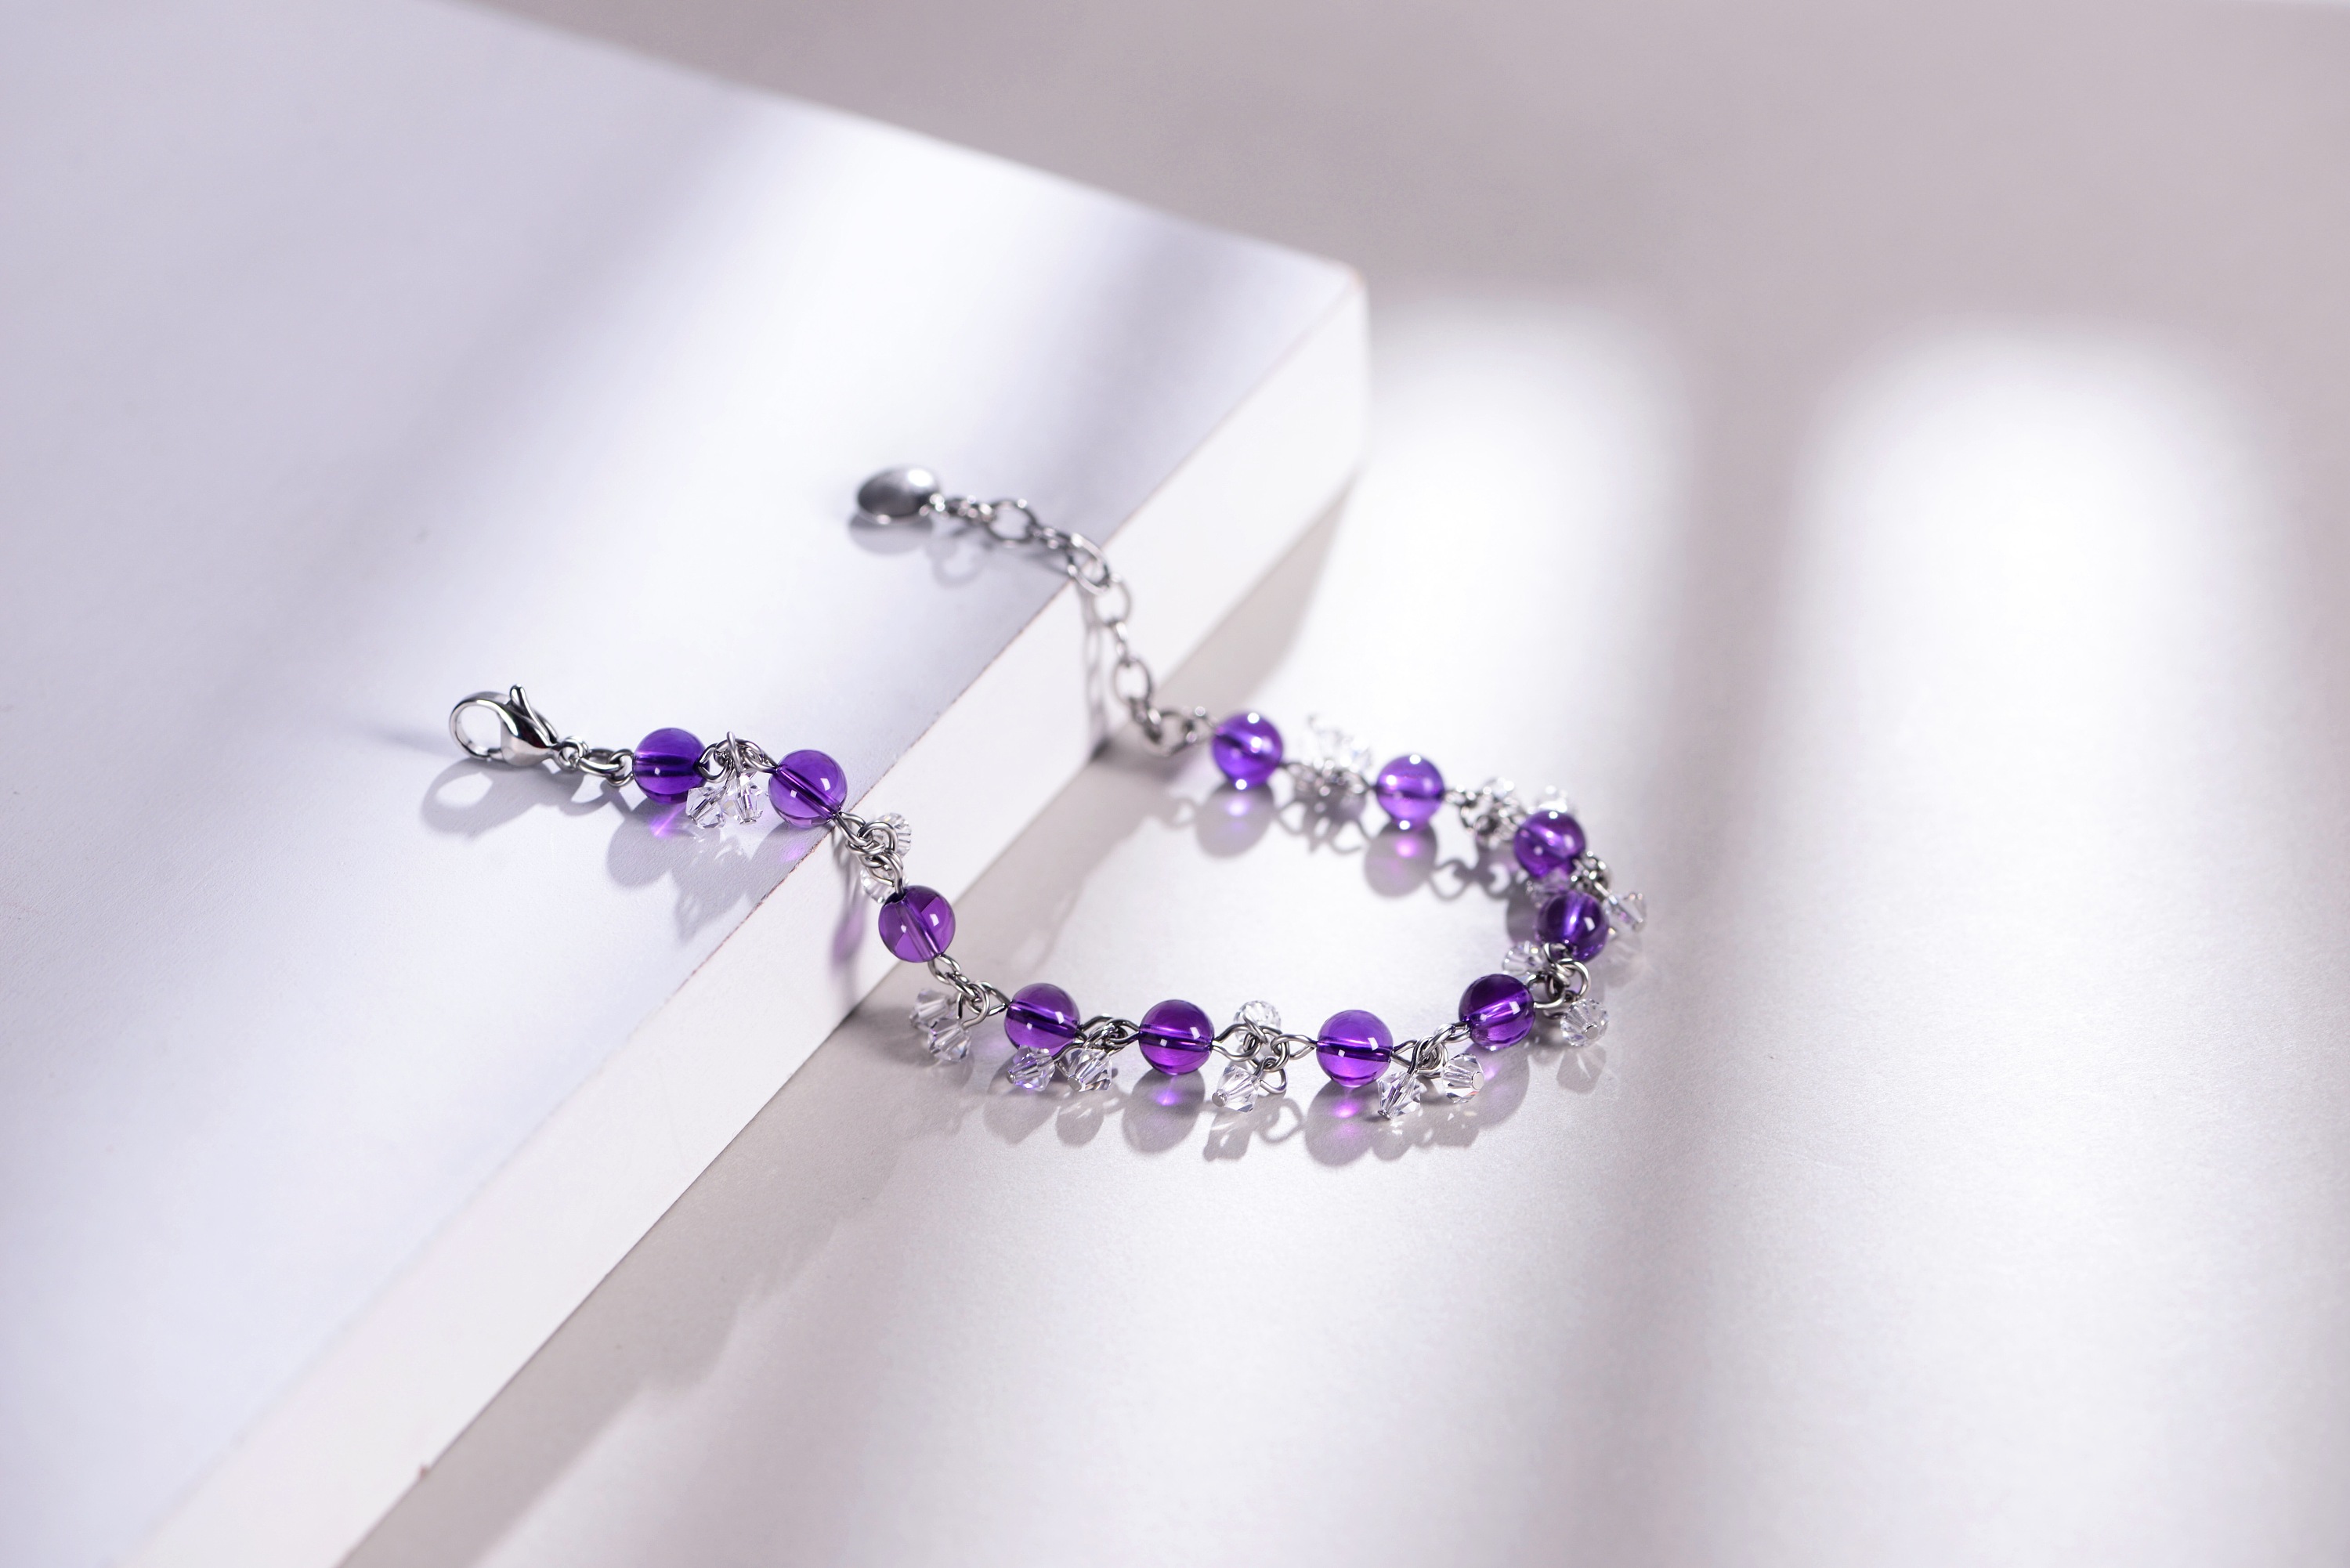 紫水晶、软玉配蓝宝石项链 TIFFANY & CO.，… - 堆糖，美图壁纸兴趣社区